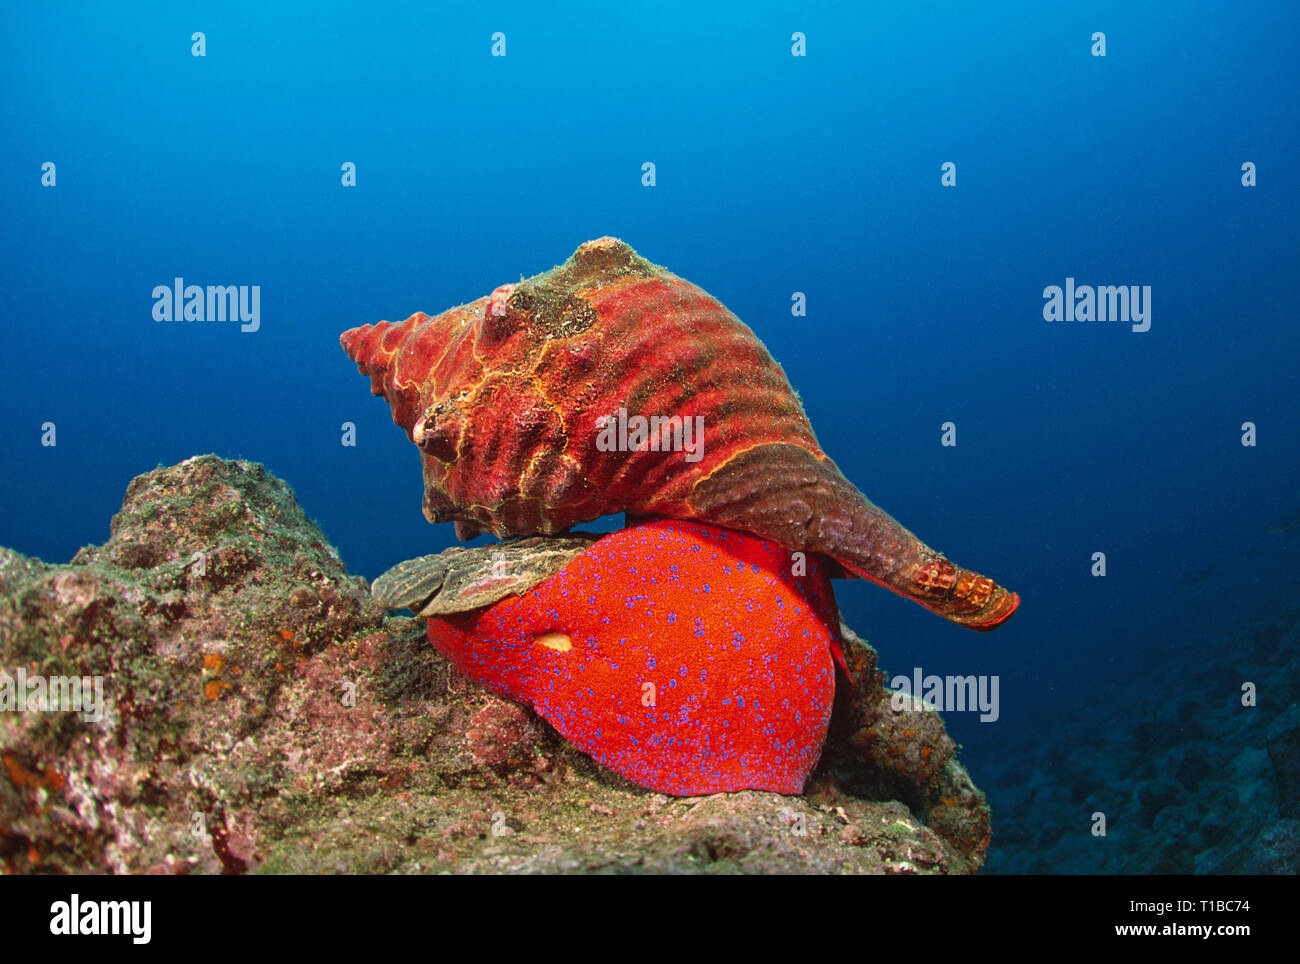 Panama Horse Conch or Galapagos Horse conch (Fasciolaria princeps), Galapagos Islands, Ecuador Stock Photo